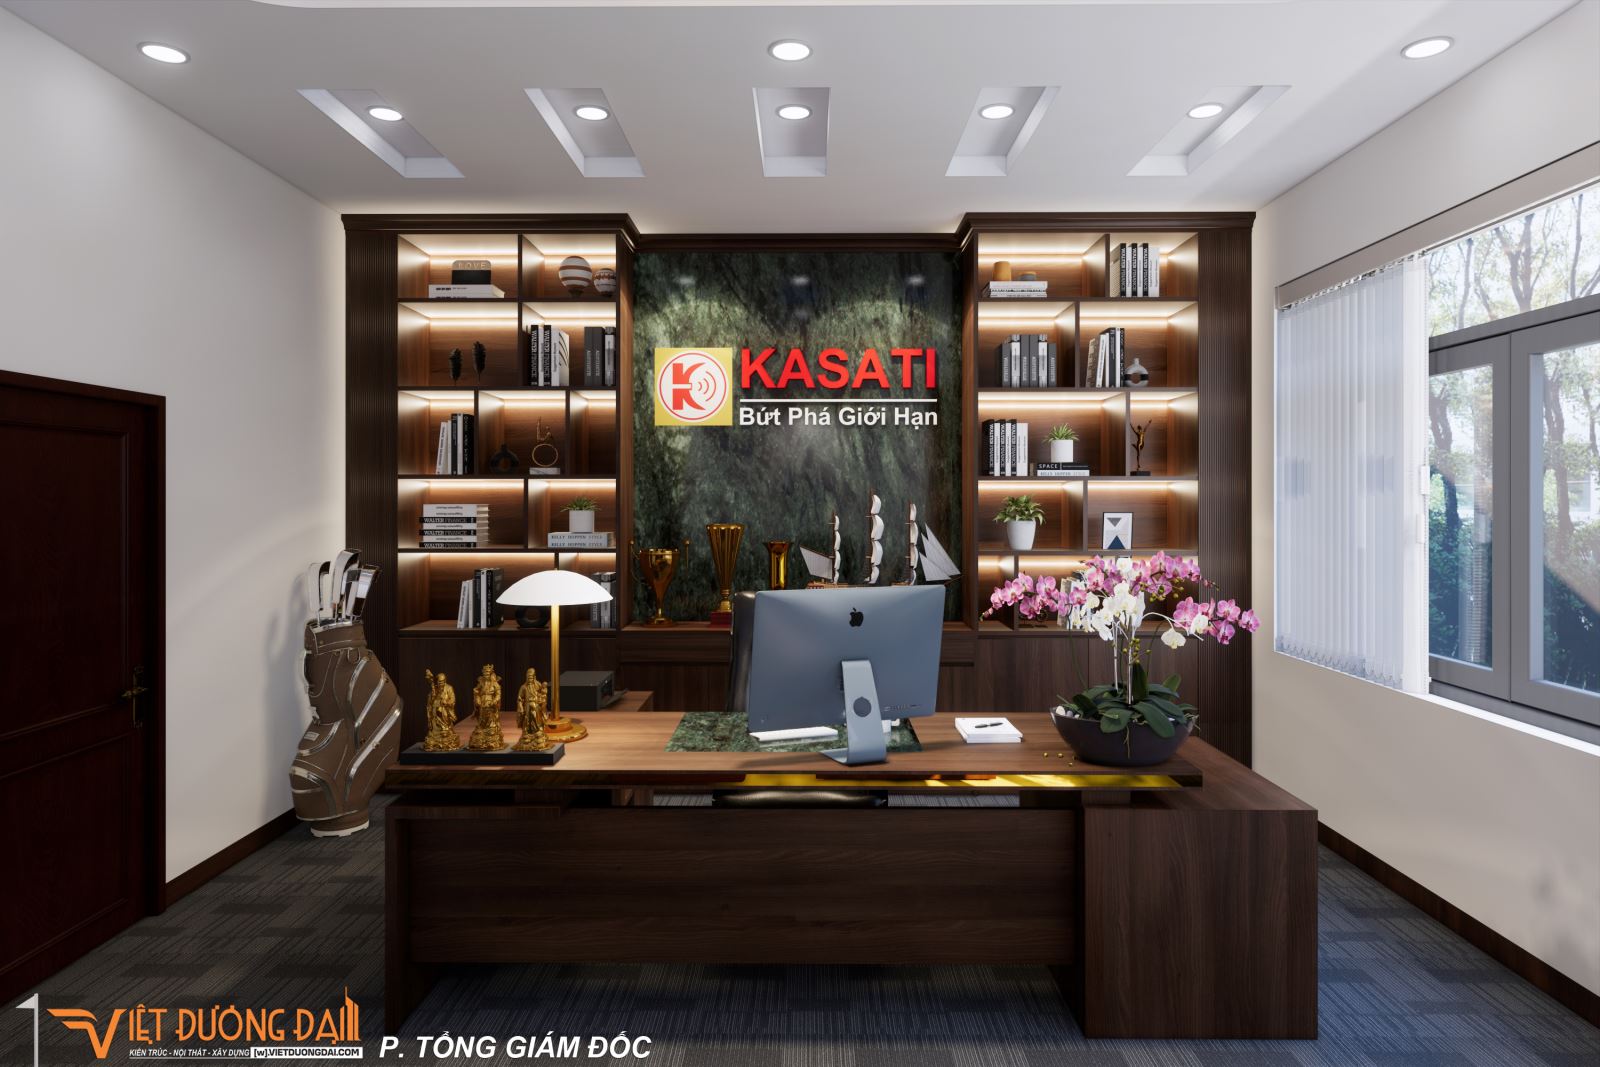 Kasati Office